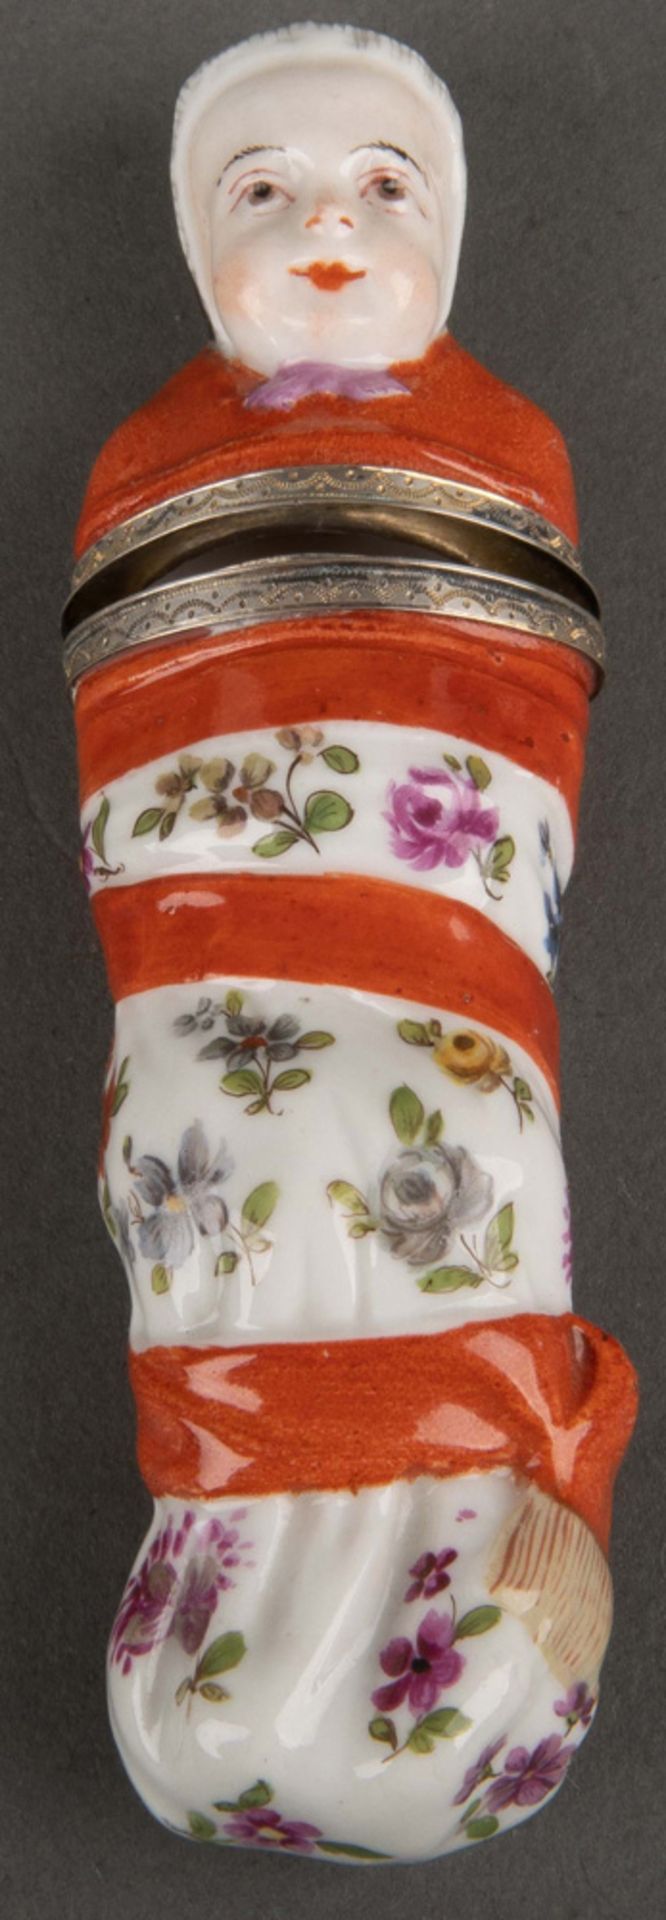 Nadeletui „Wickelkind“. Fürstenberg 1760-70. Porzellan, fein ausmodelliert und bunt floral bemalt, o